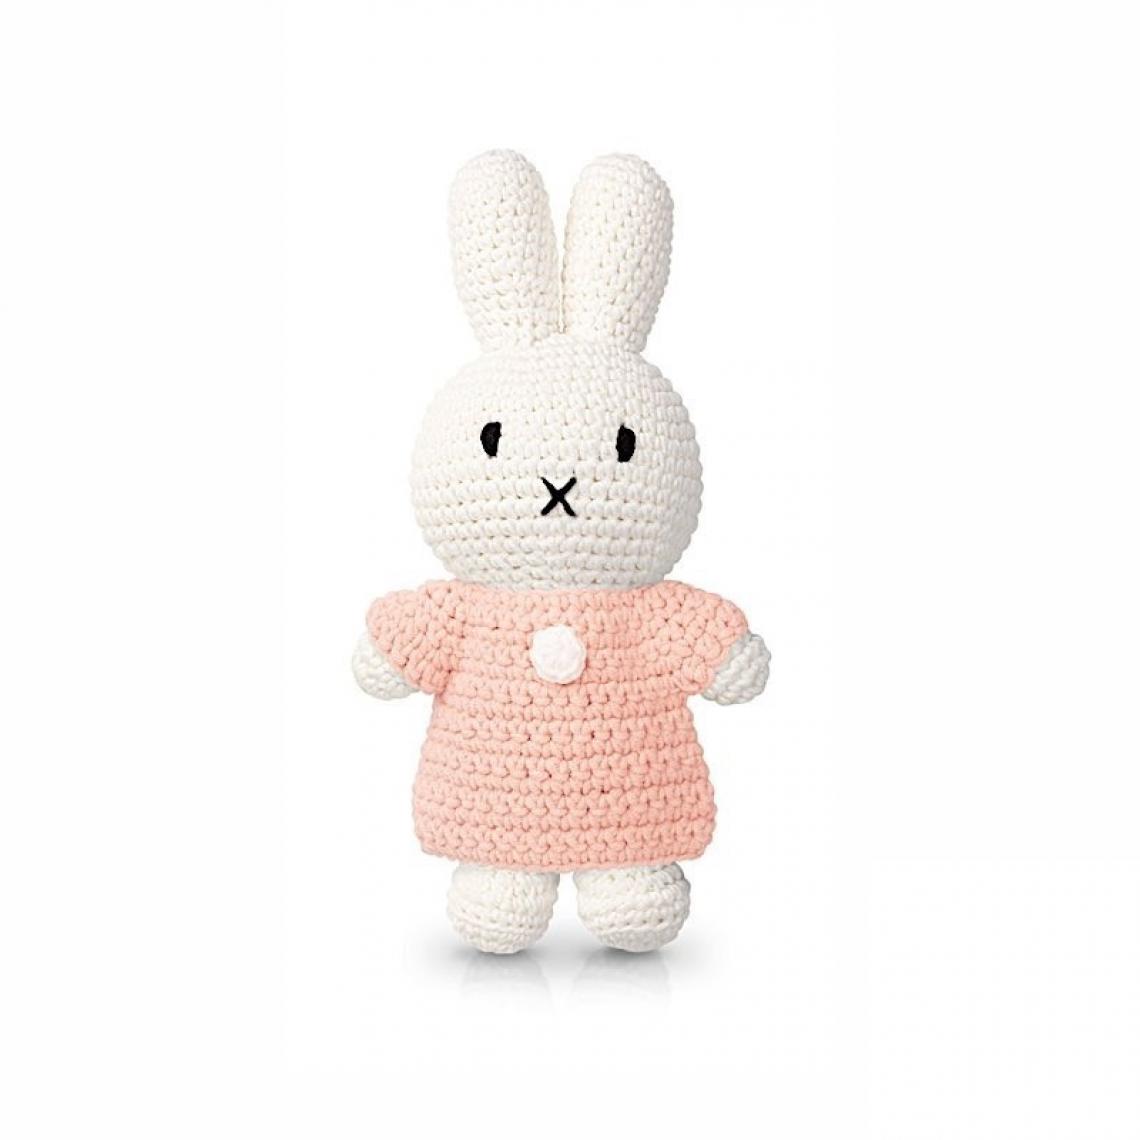 Ac-Deco - Peluche Miffy en crochet - L 10 x l 5 x H 25 cm - Rose pastel - Doudous